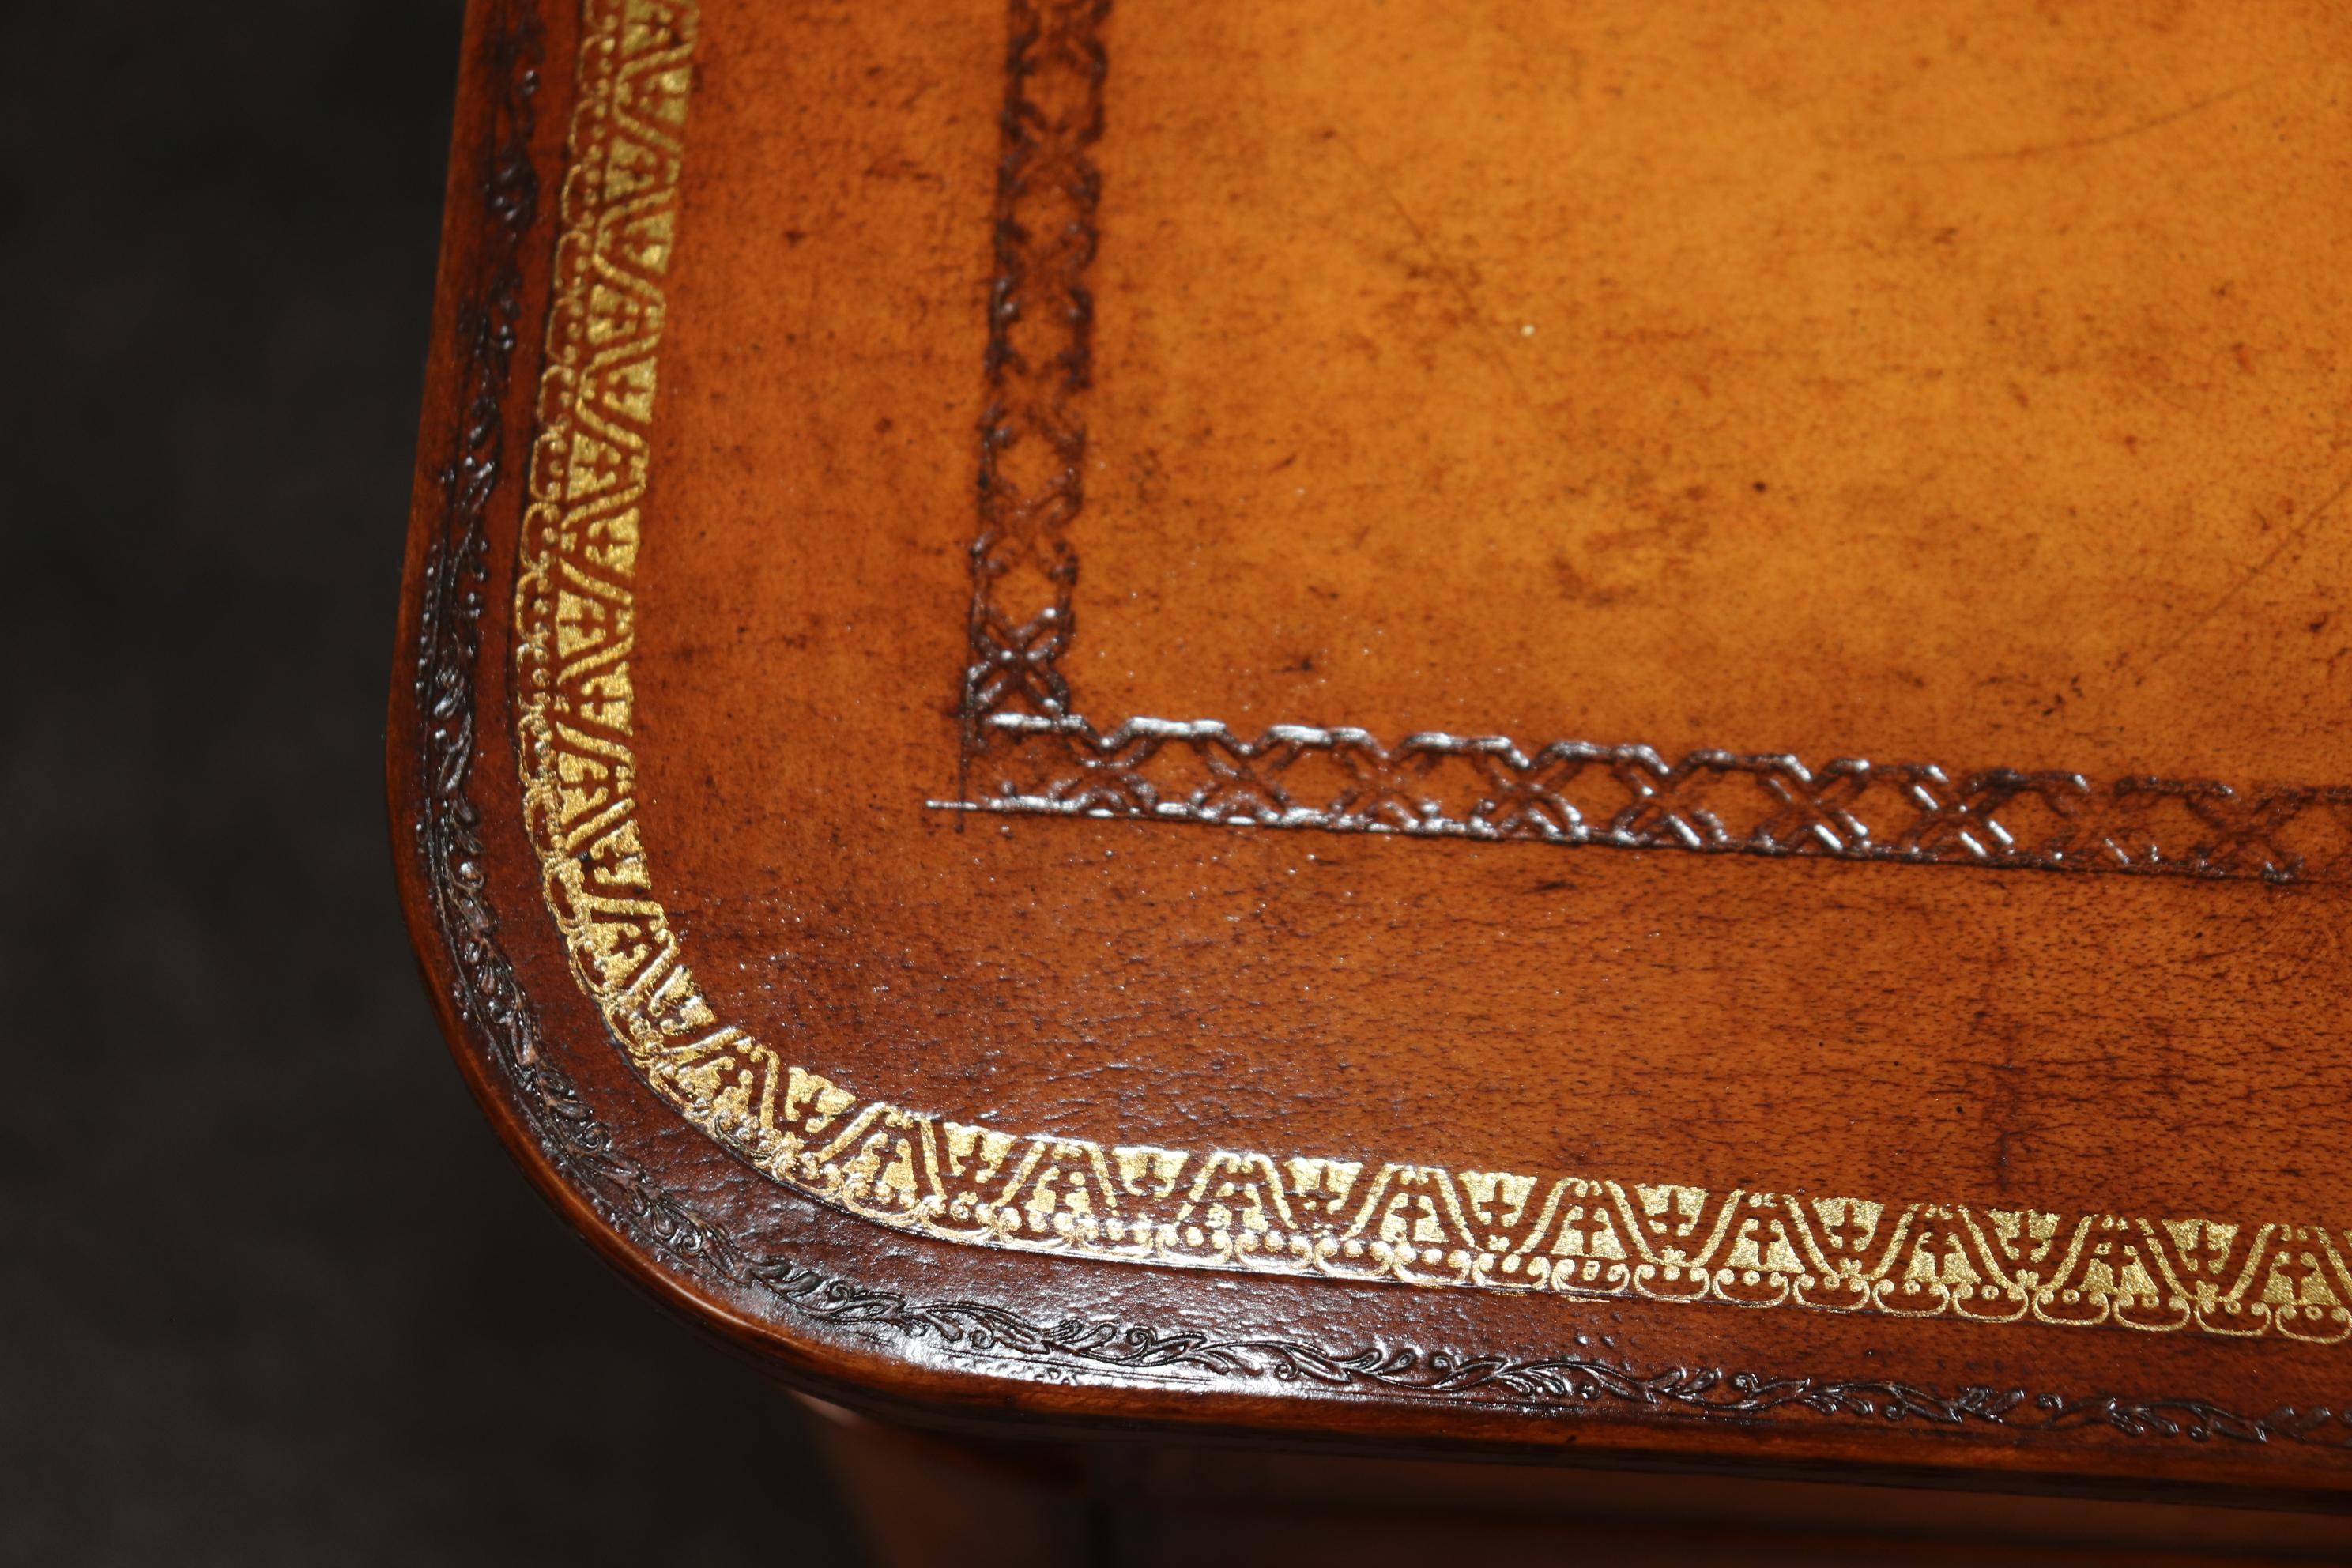 Il s'agit d'une superbe commode Maitland Smith enveloppée de cuir et estampée à l'or fin. La pièce est finie dans un cuir patiné antique avec une détresse intentionnelle et un vieillissement ajouté pour donner l'impression d'être antique. Le coffre